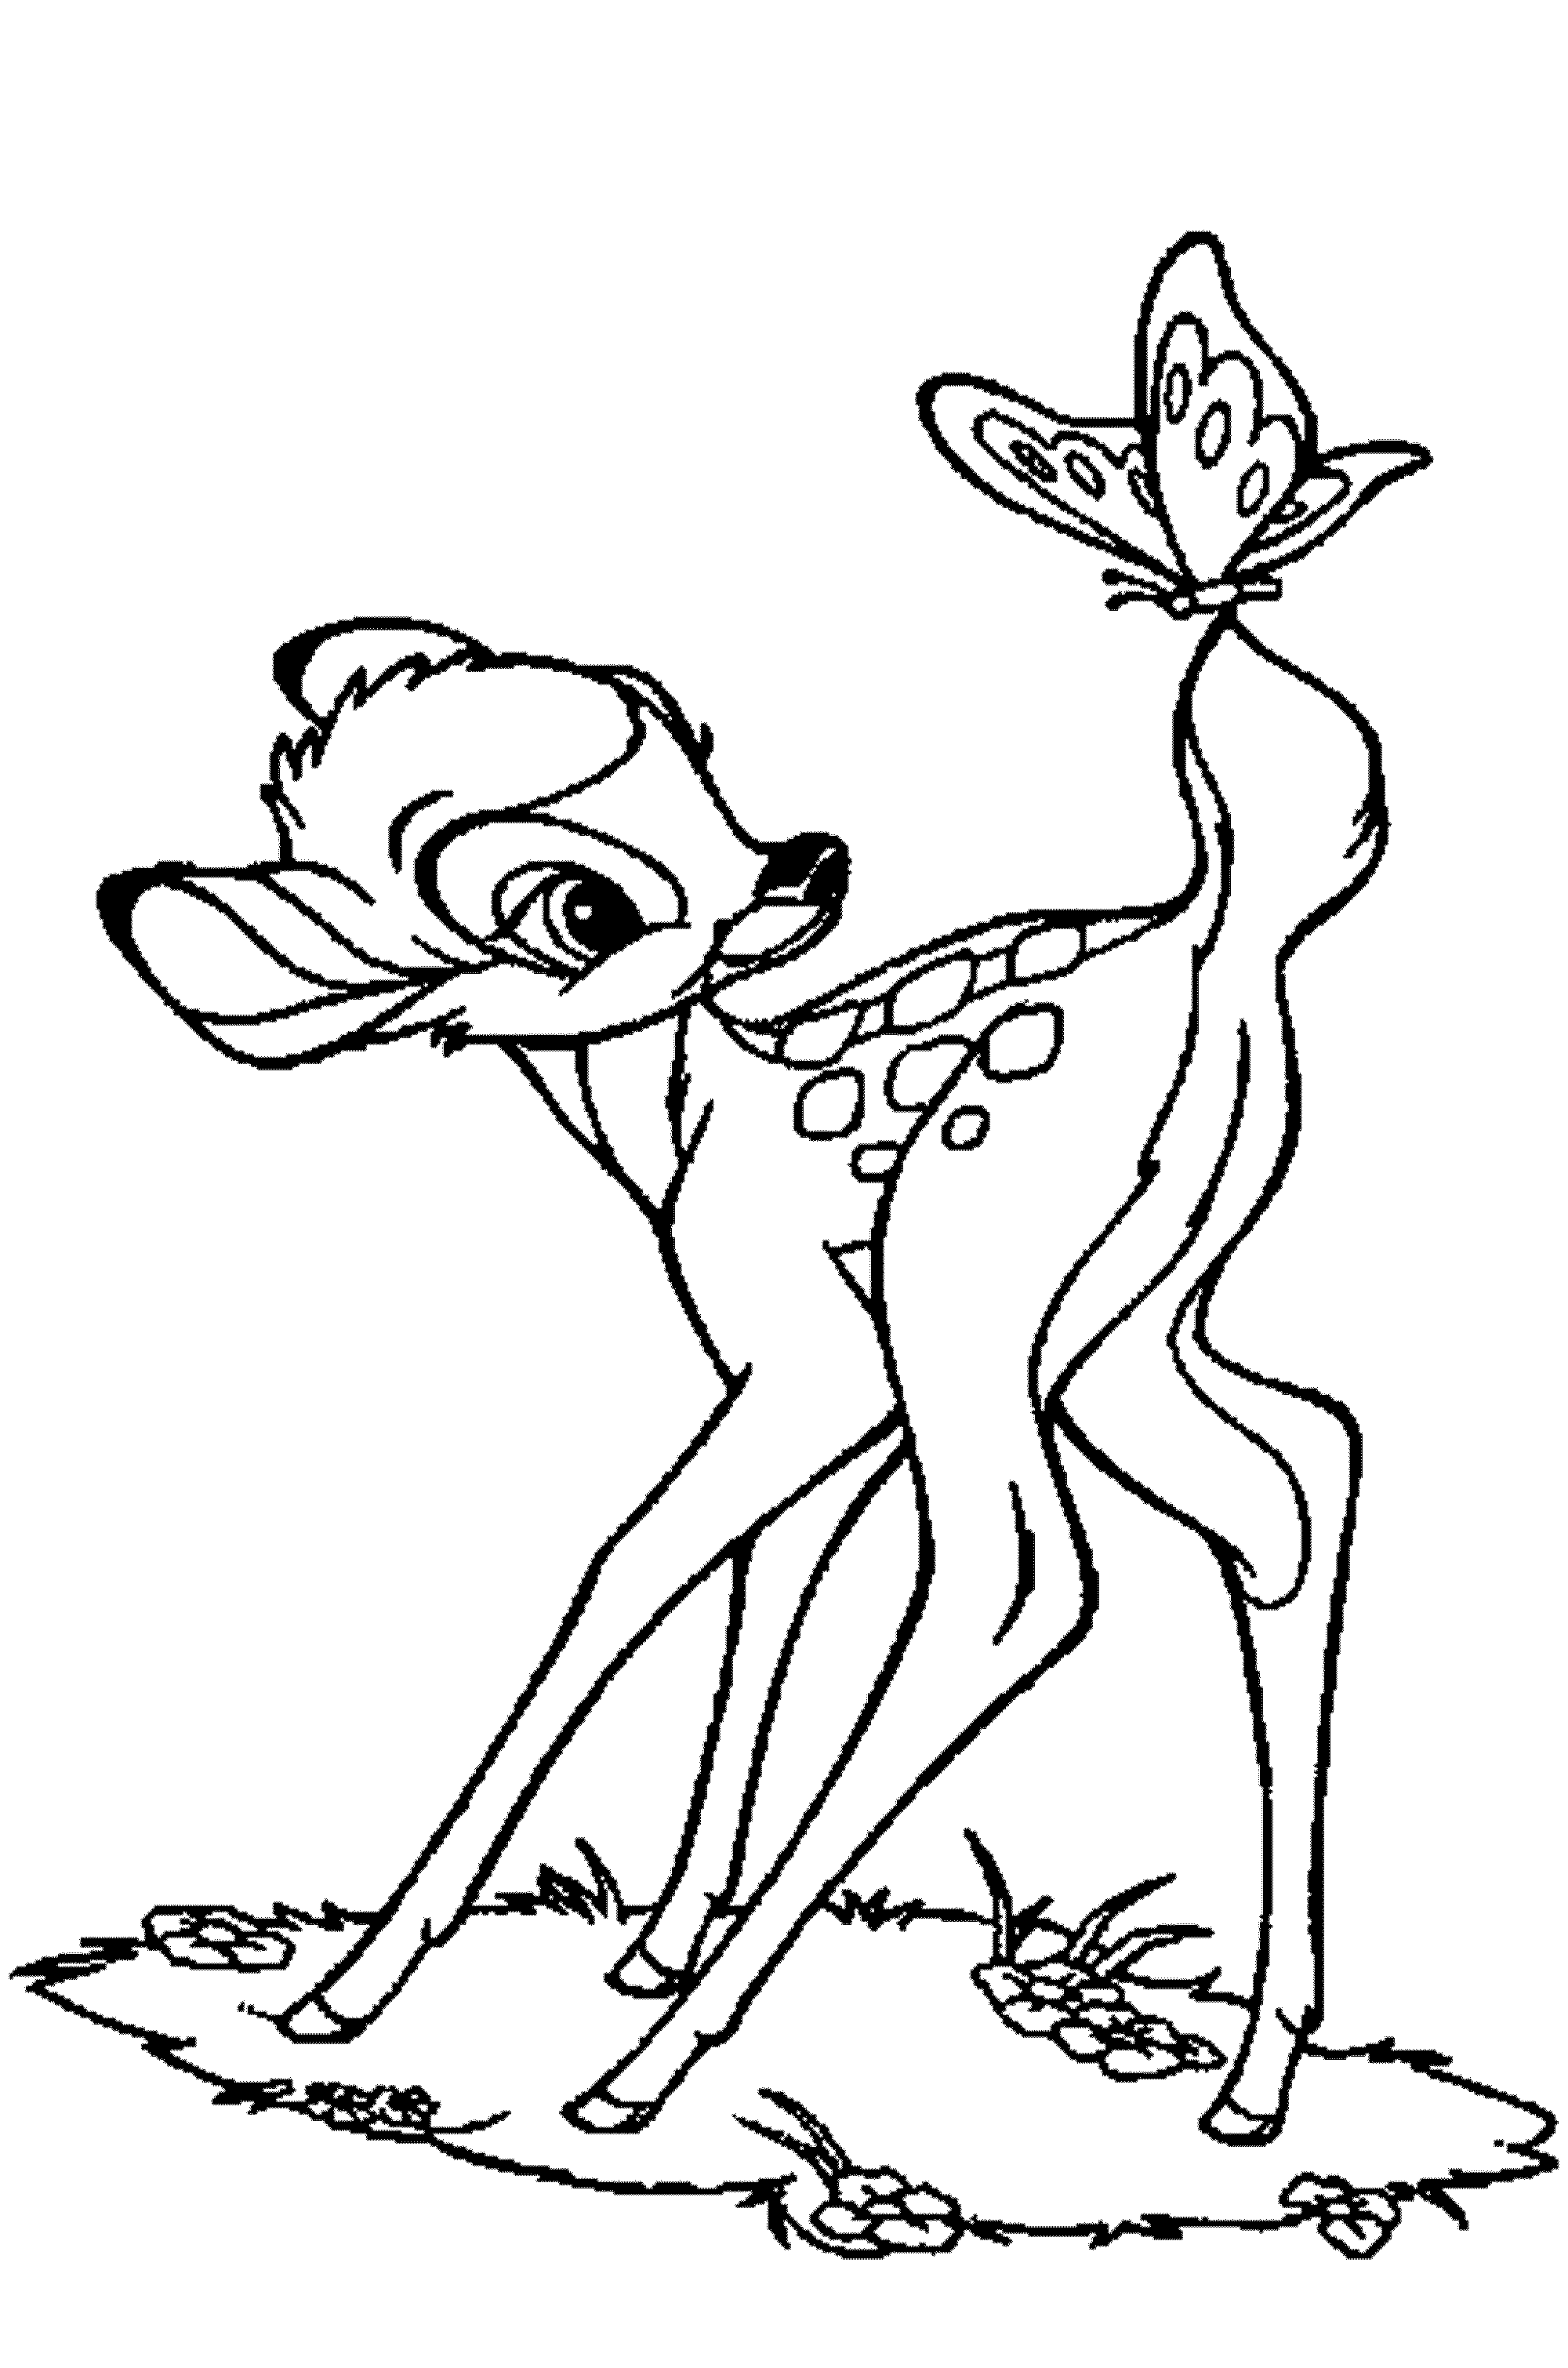 Baby Deer Drawing at GetDrawings | Free download